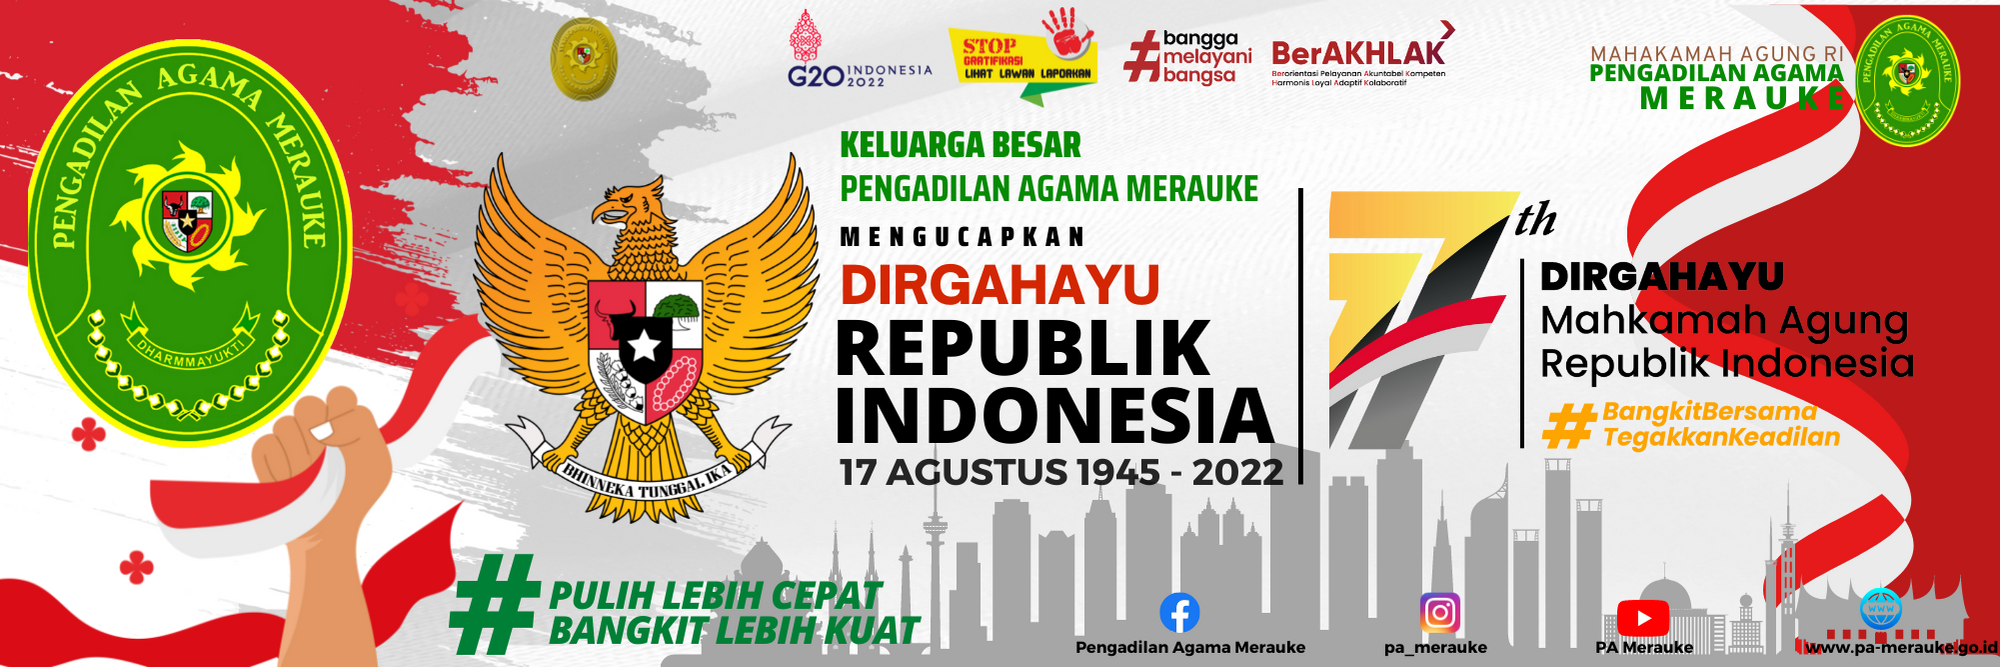 Pengadilan Agama Merauke Mengucapkan Selamat Dirgahayu Republik Indonesia dan Hari Ulang Tahun Mahkamah Agung RI